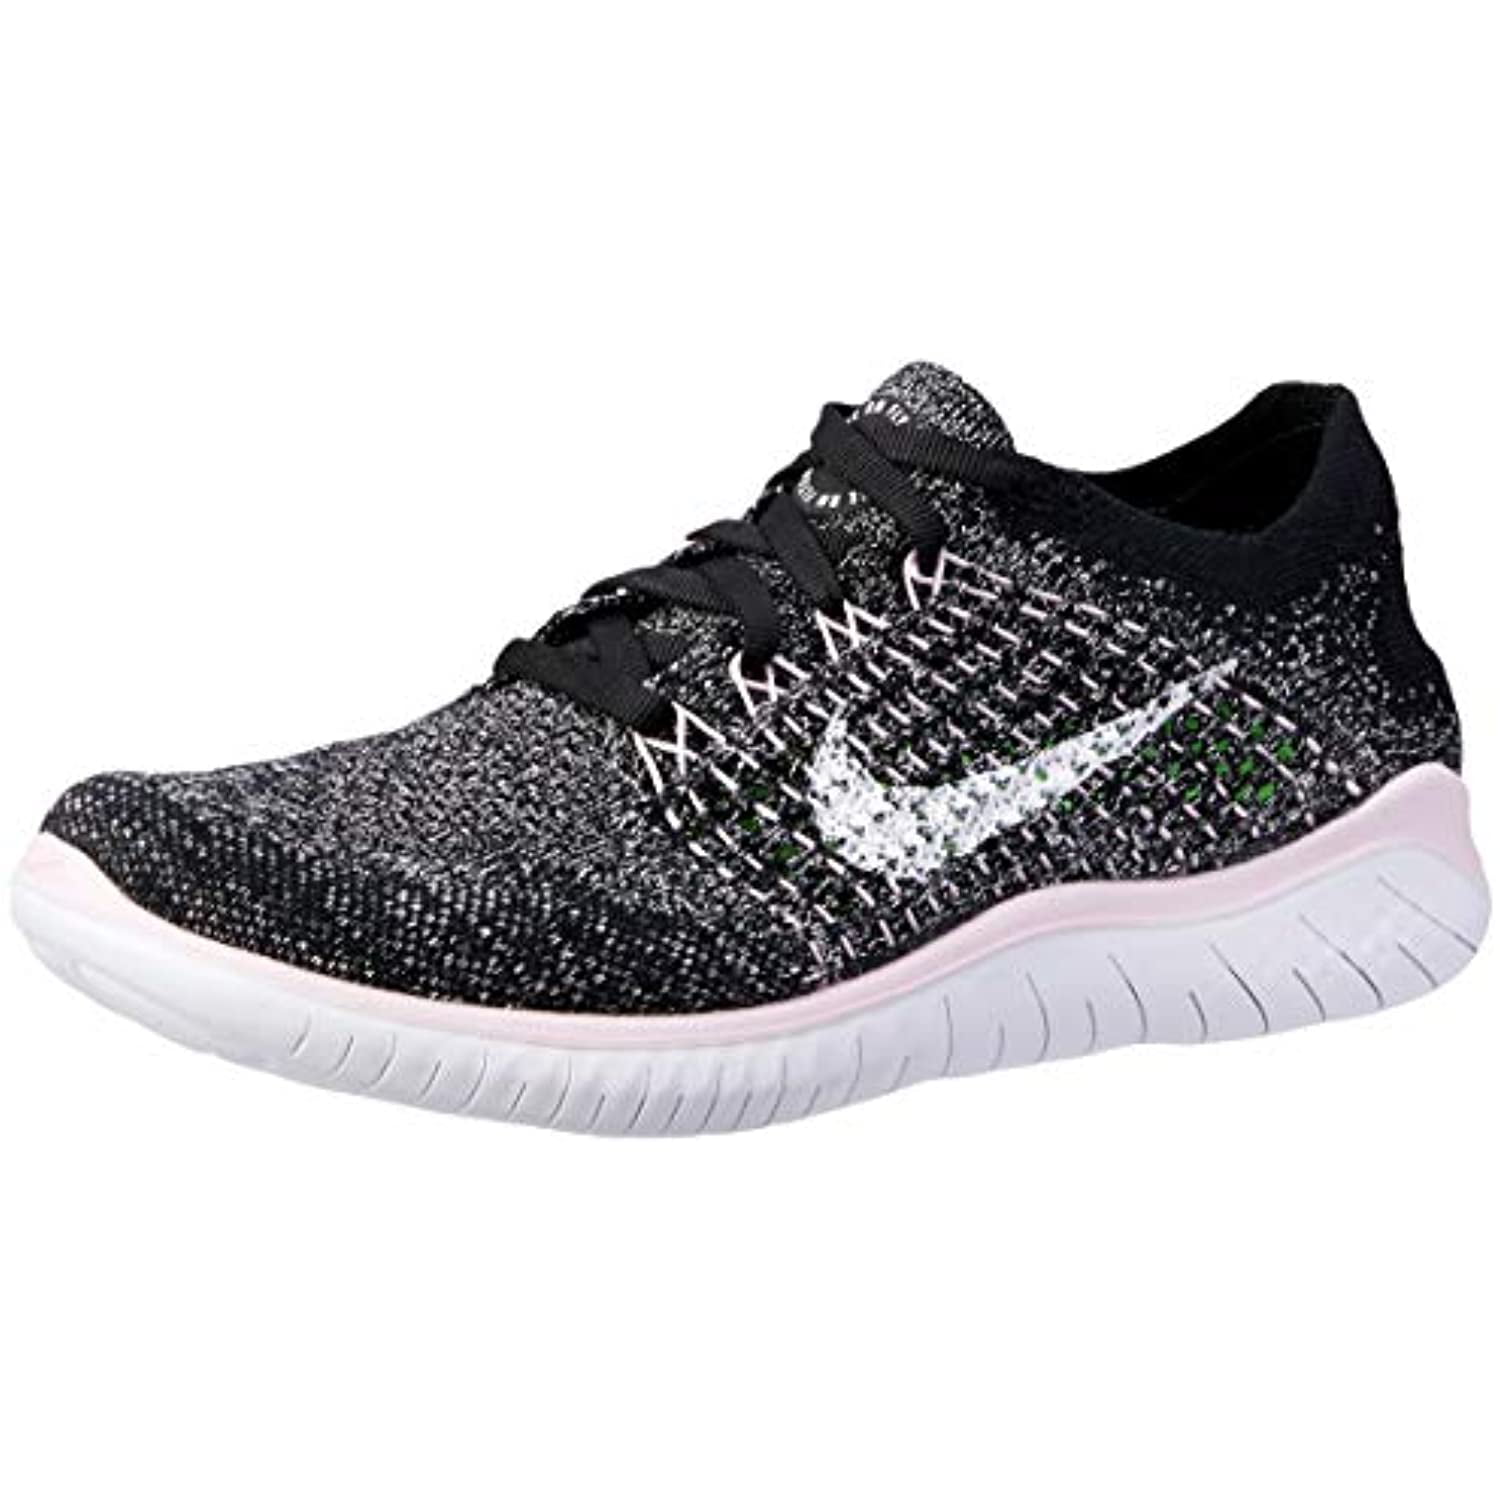 Nike Free Flyknit Women's Shoe Black/White-Pink Foam 6.5 - Walmart.com